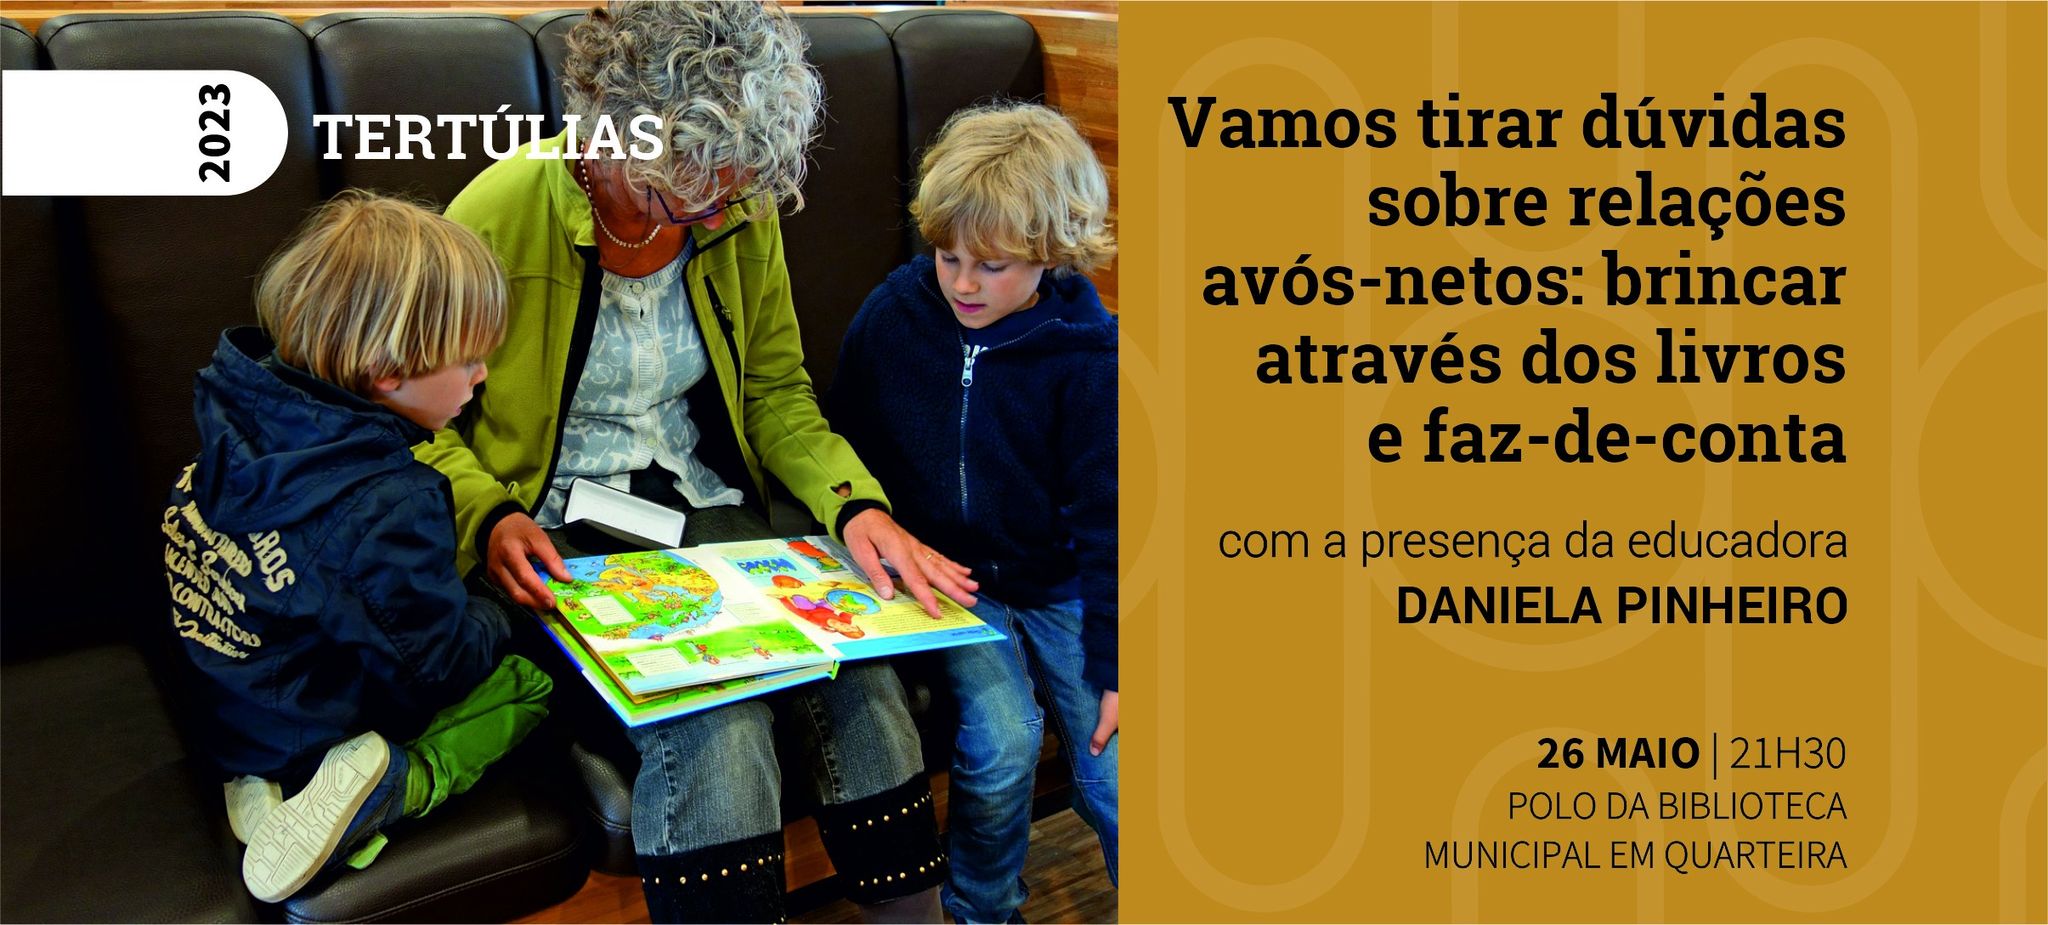 Tertúlia “Vamos tirar dúvidas sobre relações avós/netos: brincar através dos livros e faz-de-conta” 